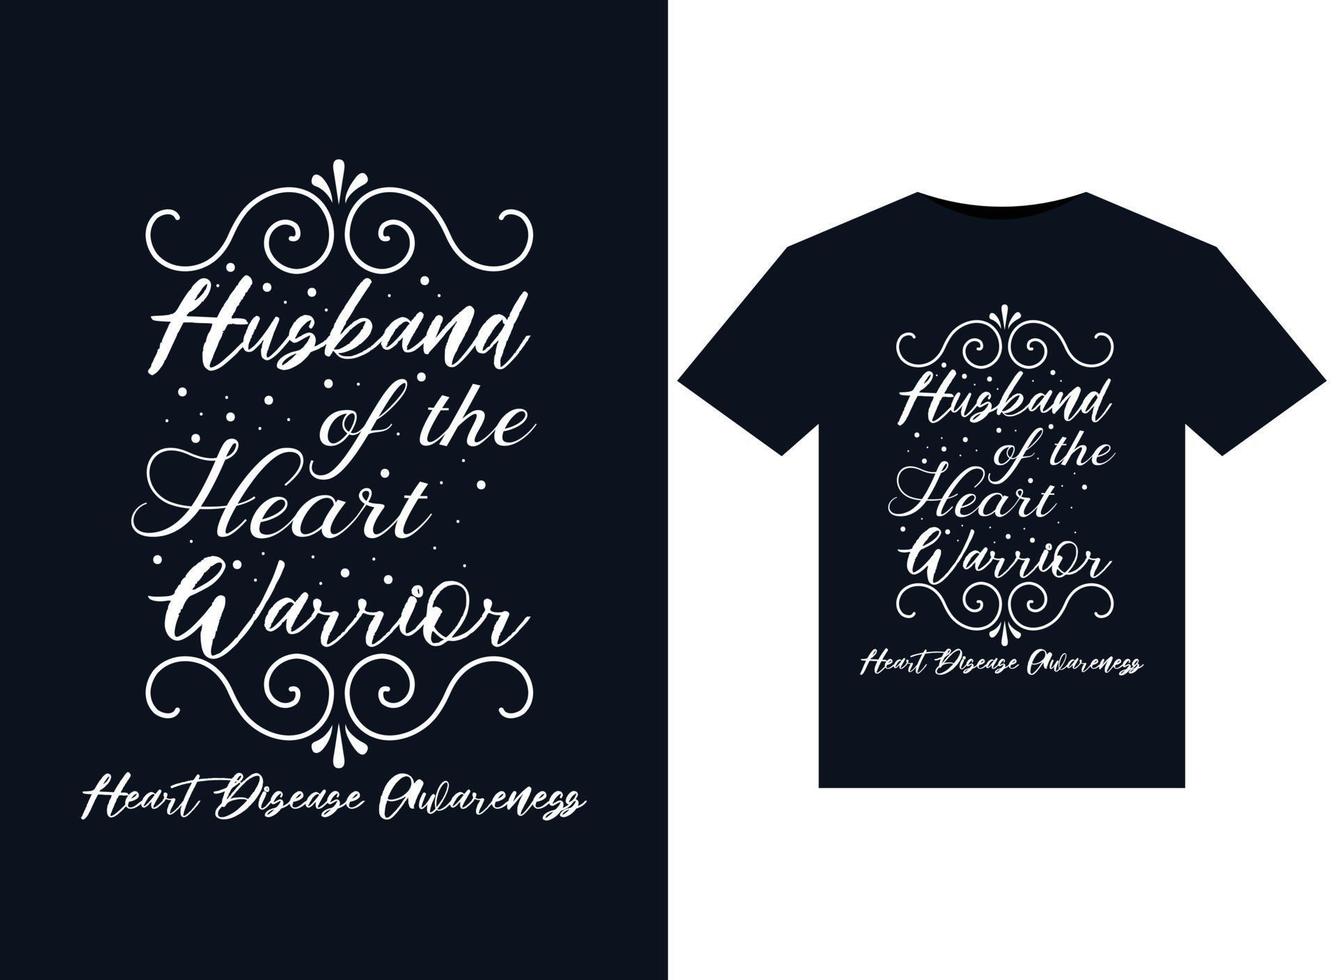 marido do guerreiro do coração ilustrações de conscientização sobre doenças cardíacas para design de camisetas prontas para impressão vetor